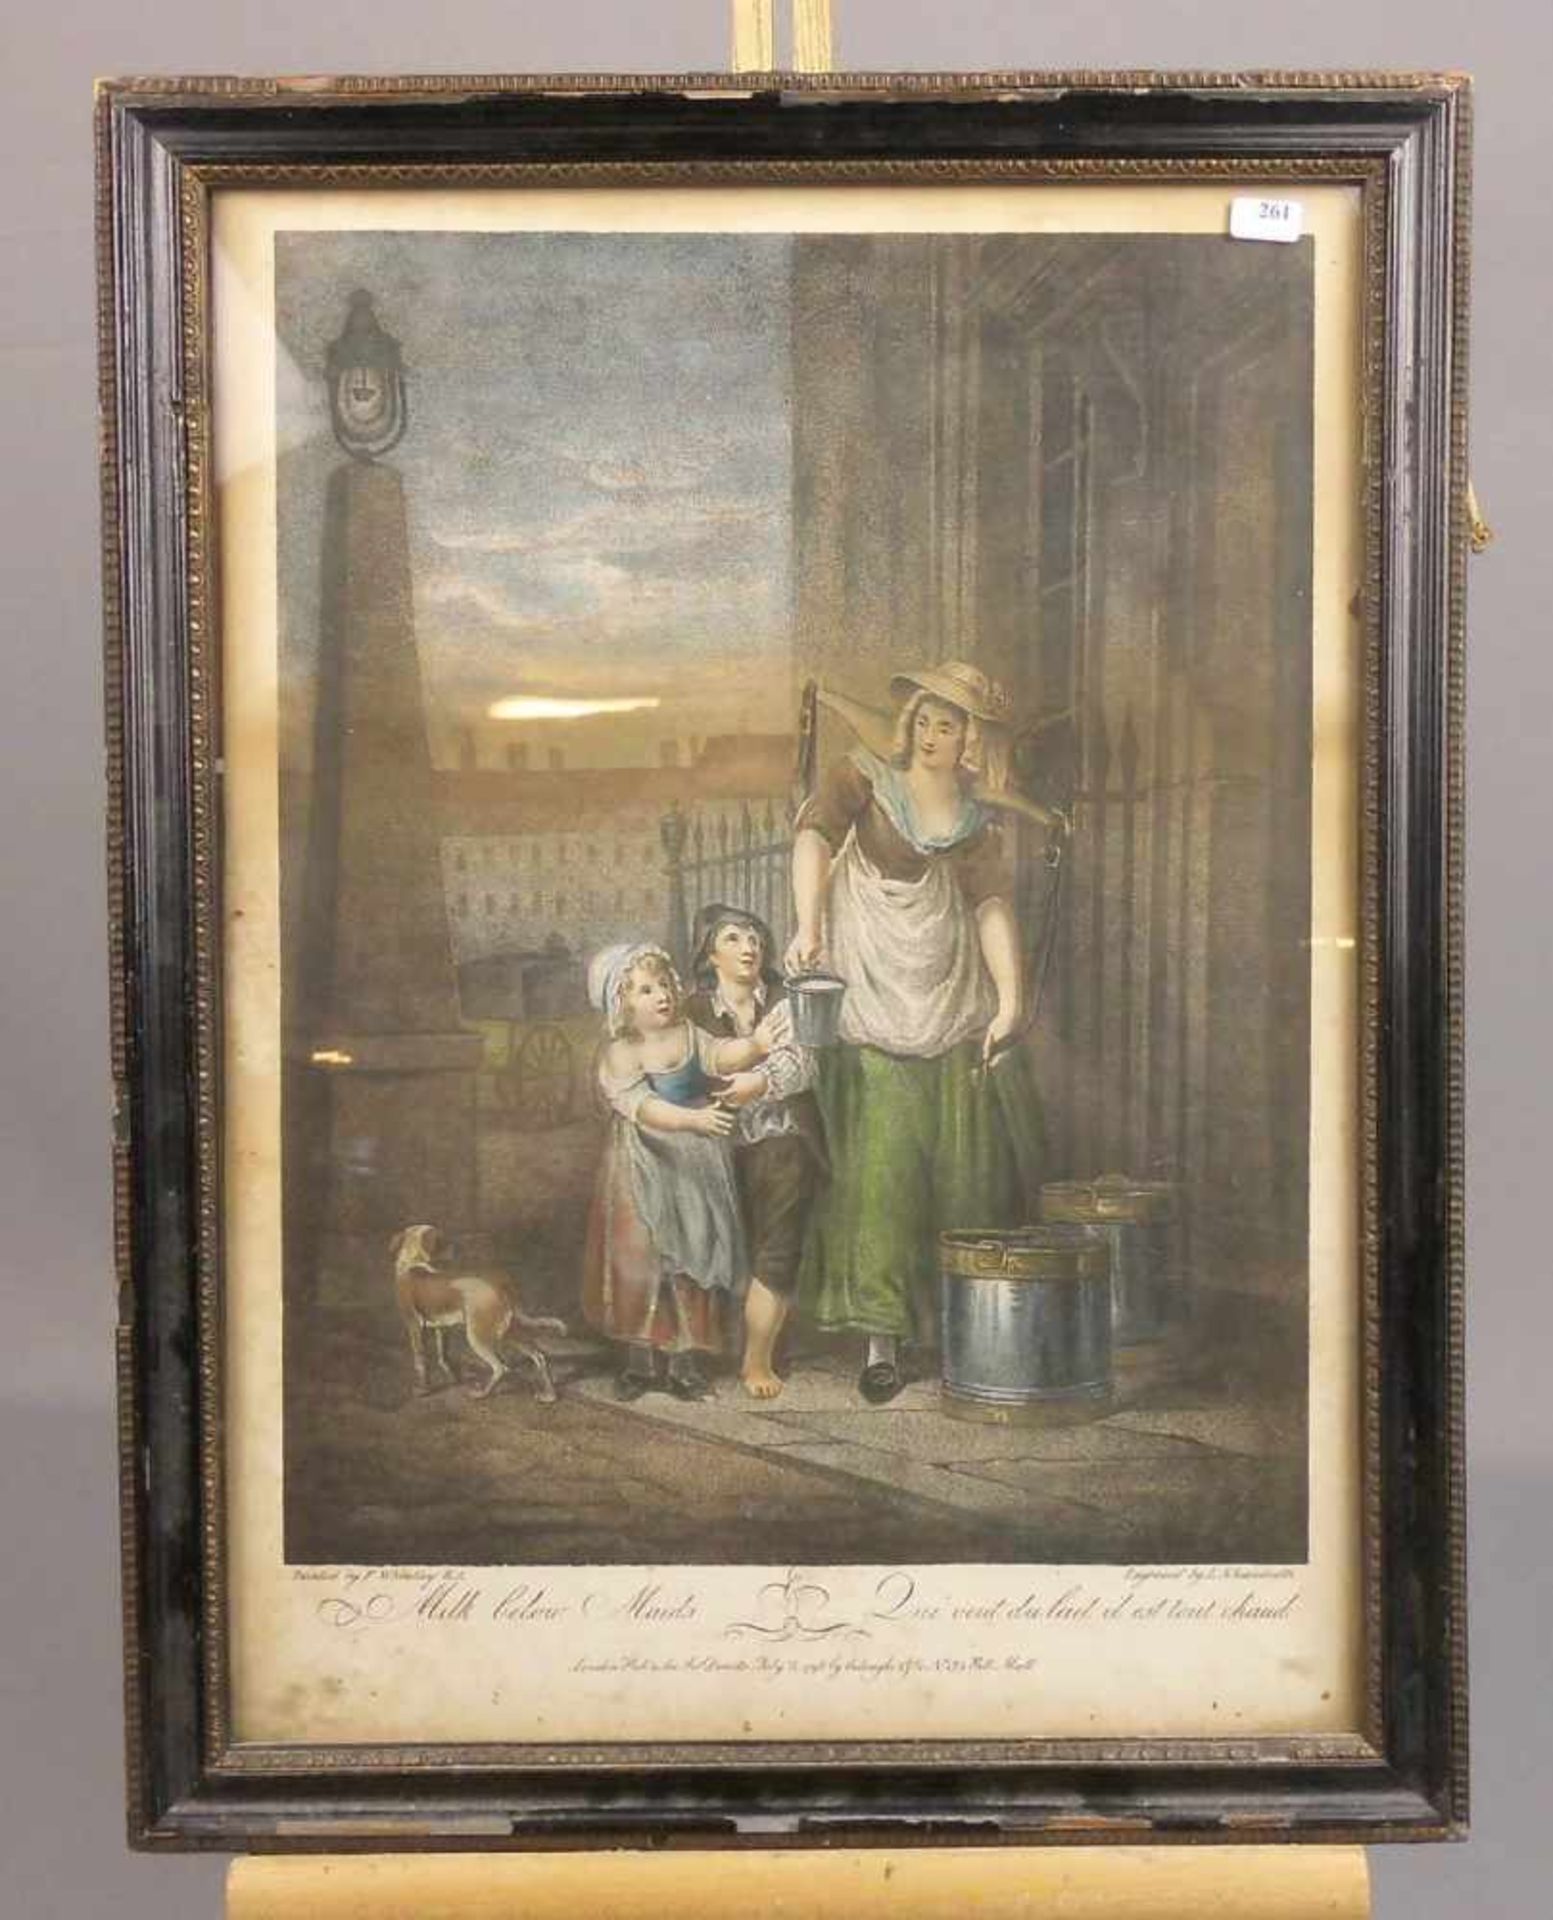 WHEATLEY, FRANCIS (1747-1801), handkolorierter Stahlstich / steel engraving: "Die Milchmagd / Milk